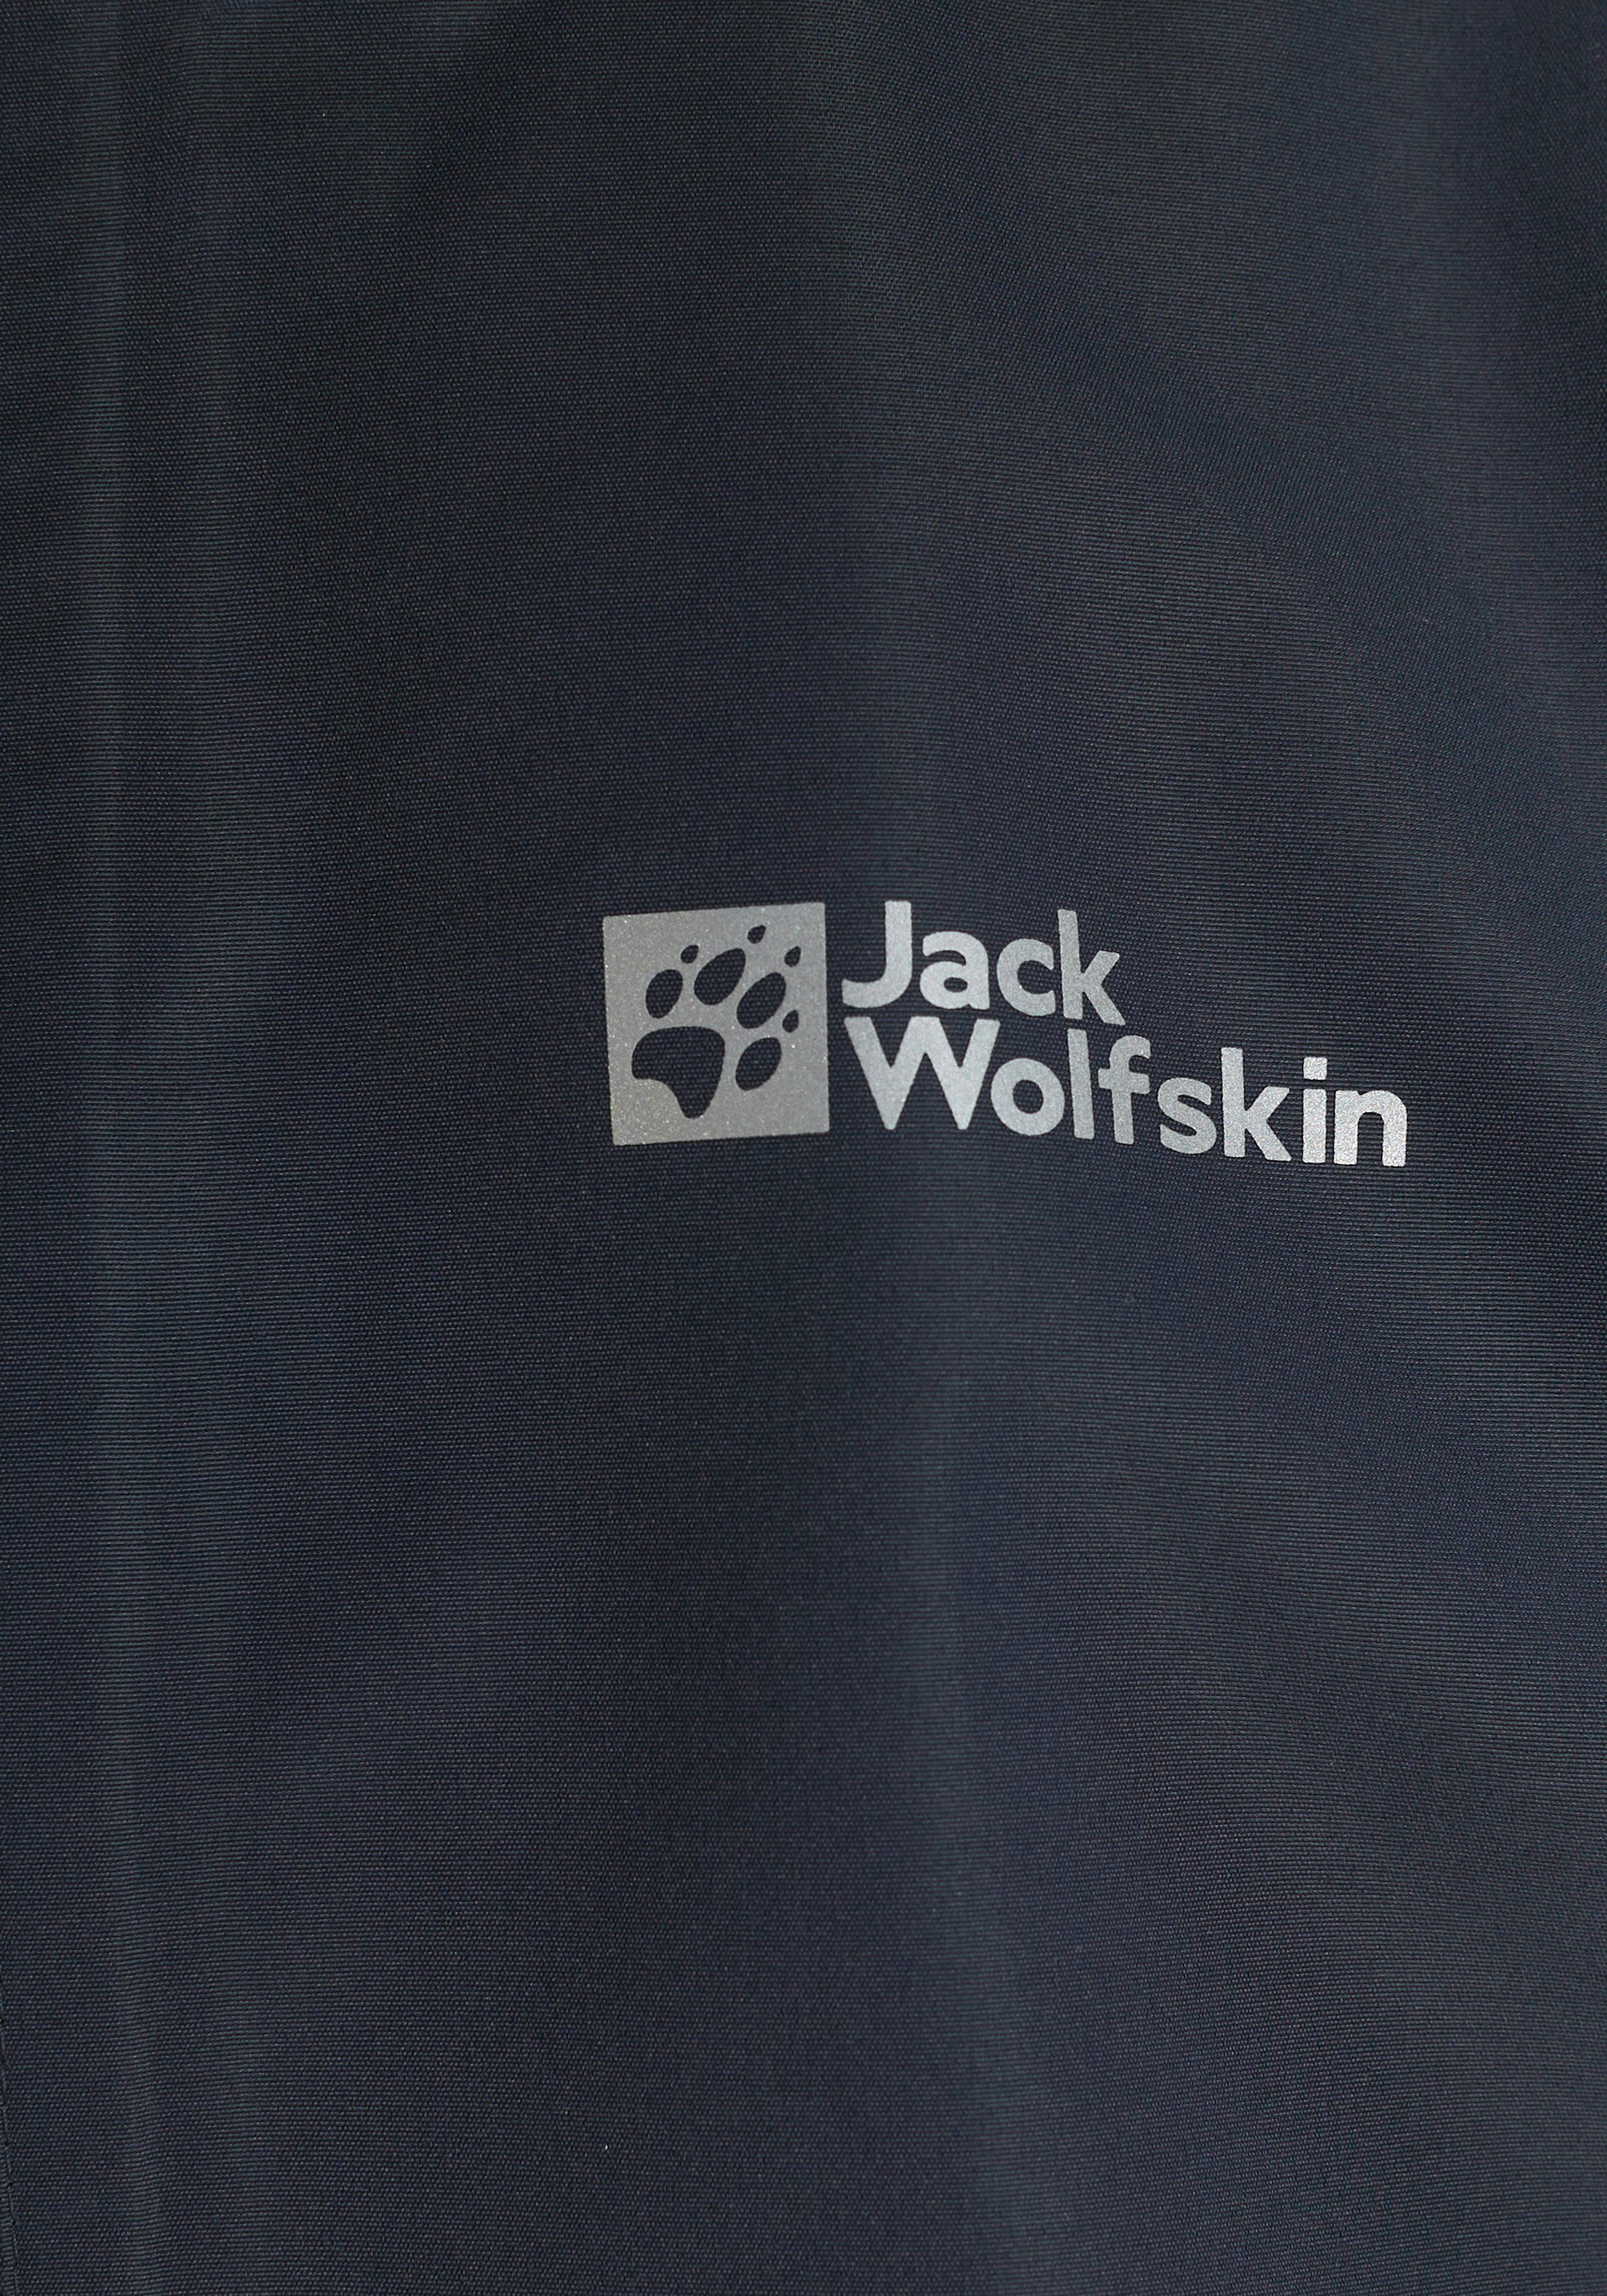 Jack Wolfskin Outdoorjacke ICELAND K Tag night Aktivität JACKET jede 3IN1 für und jeden vielseitige blue 3in1-Jacke